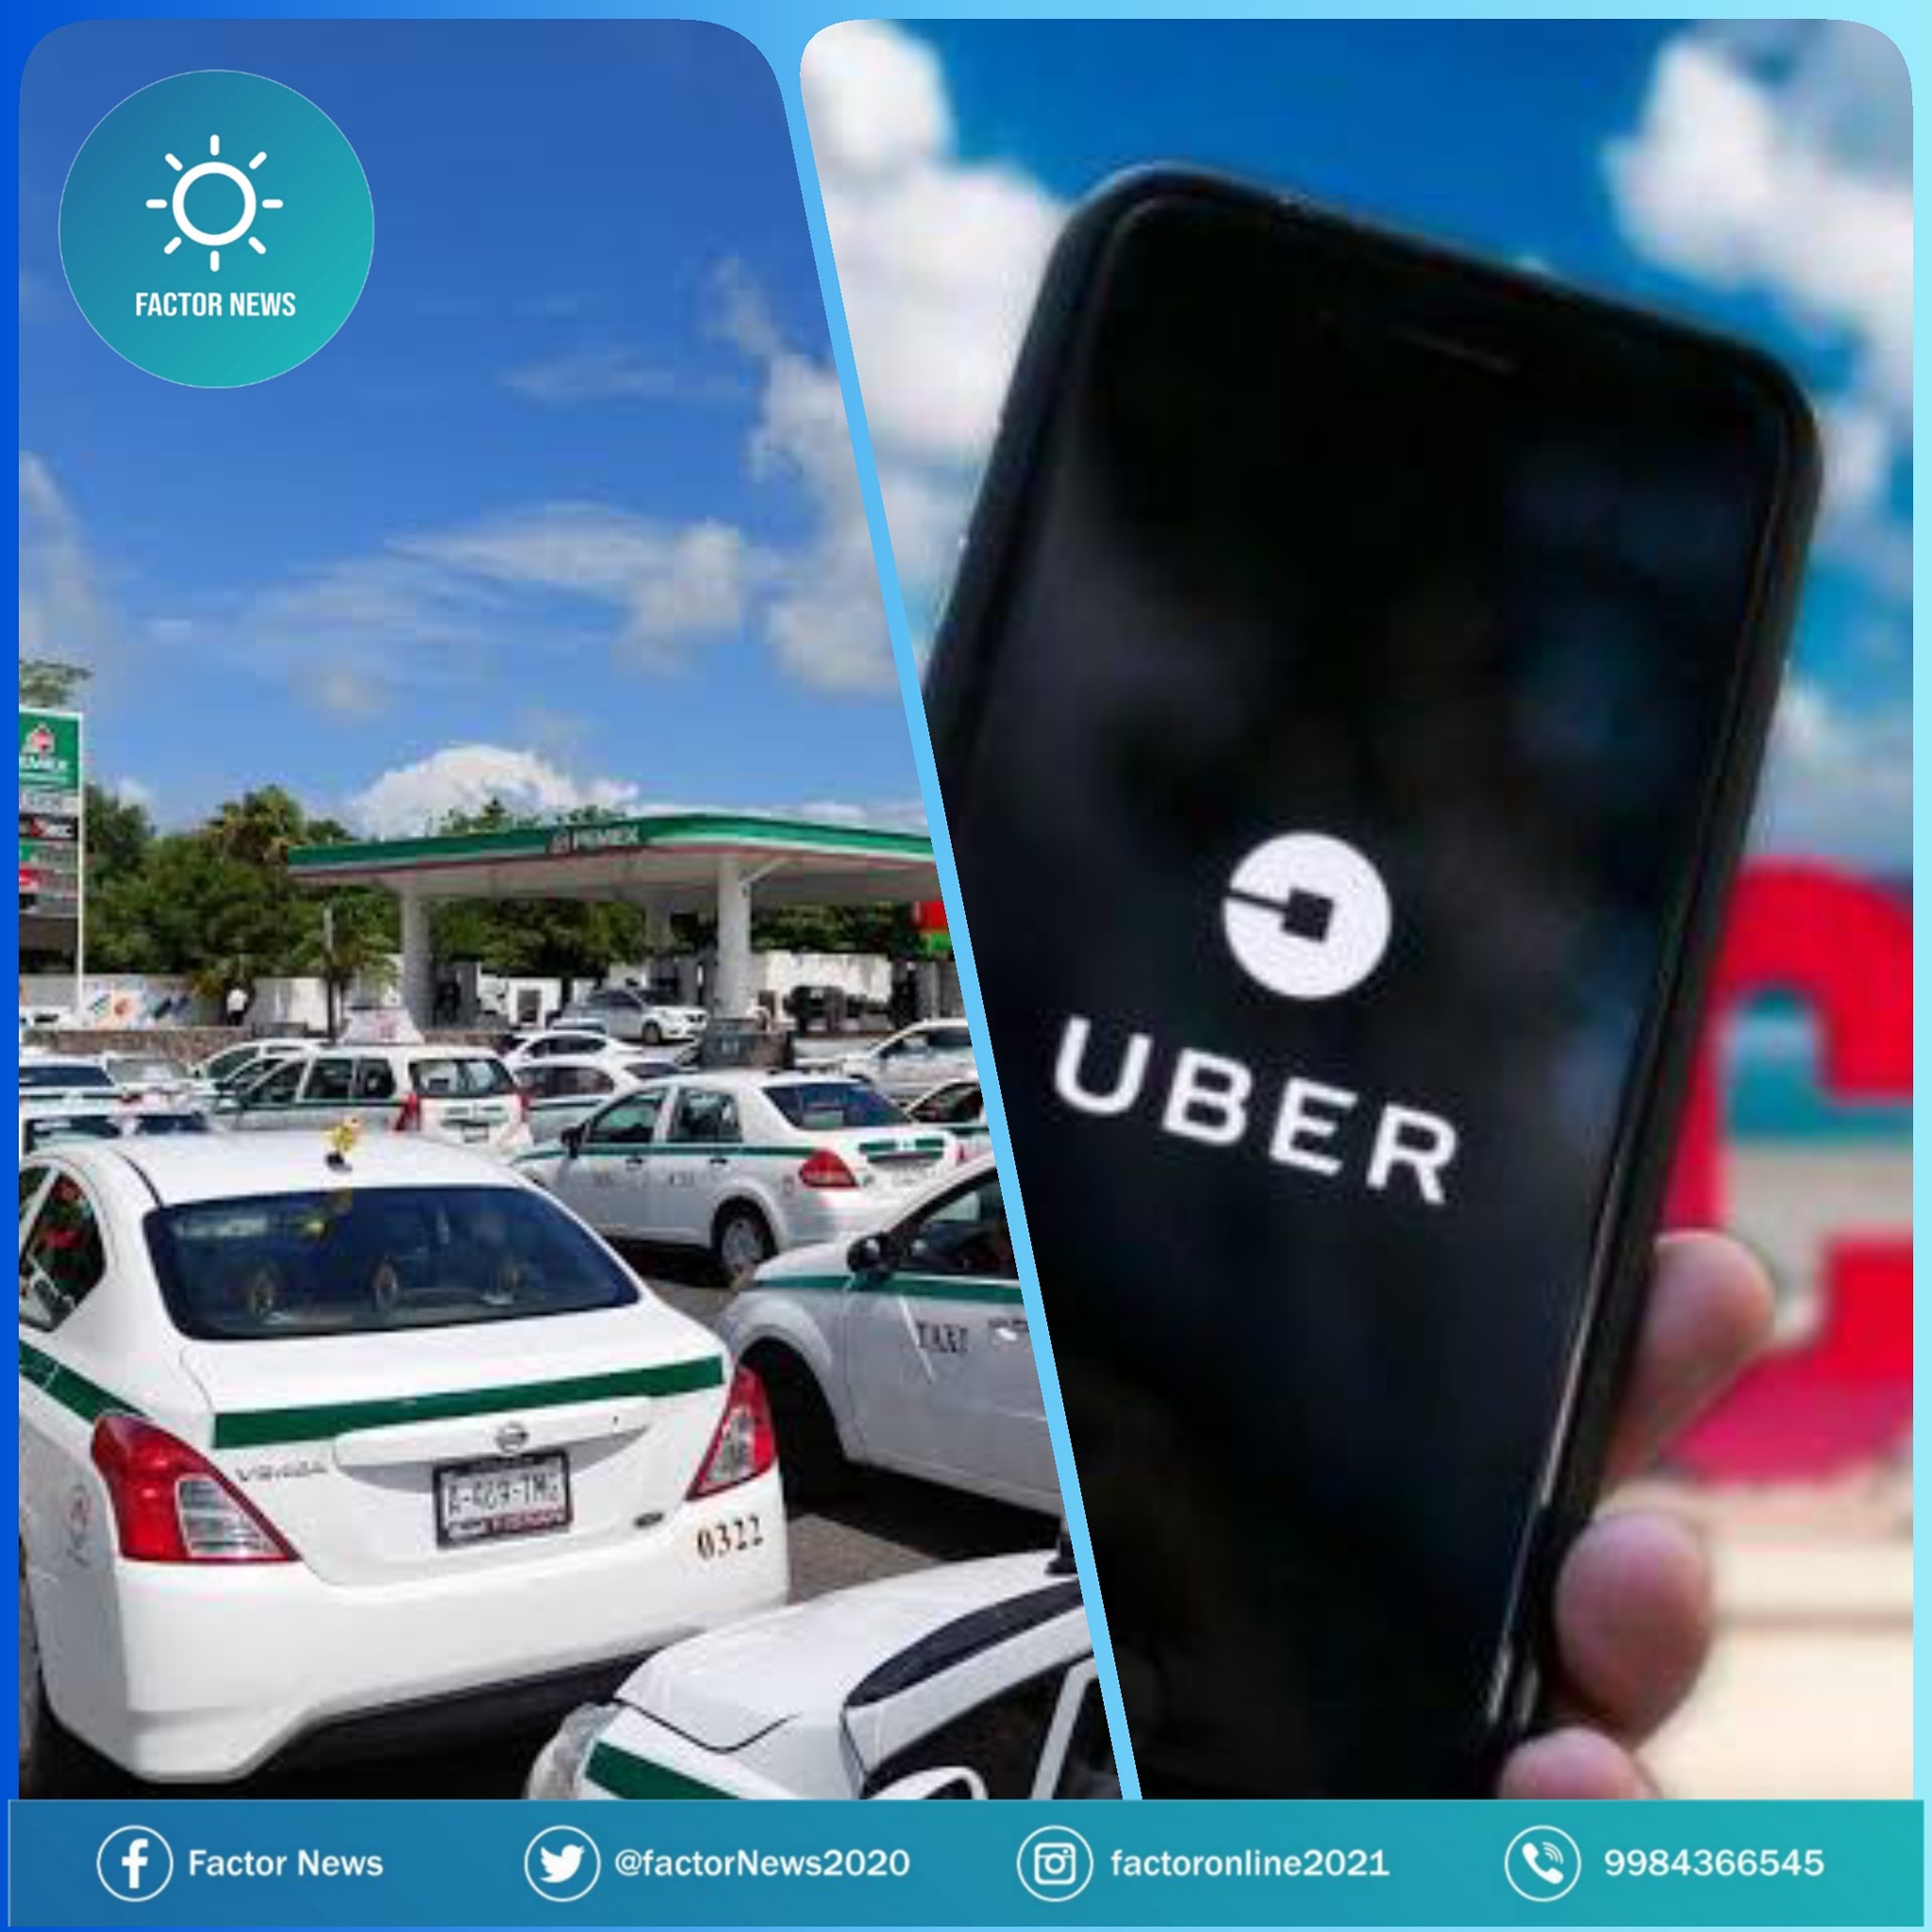 Socios de taxis, estarían dispuestos a apoyar a UBER con sus placas.